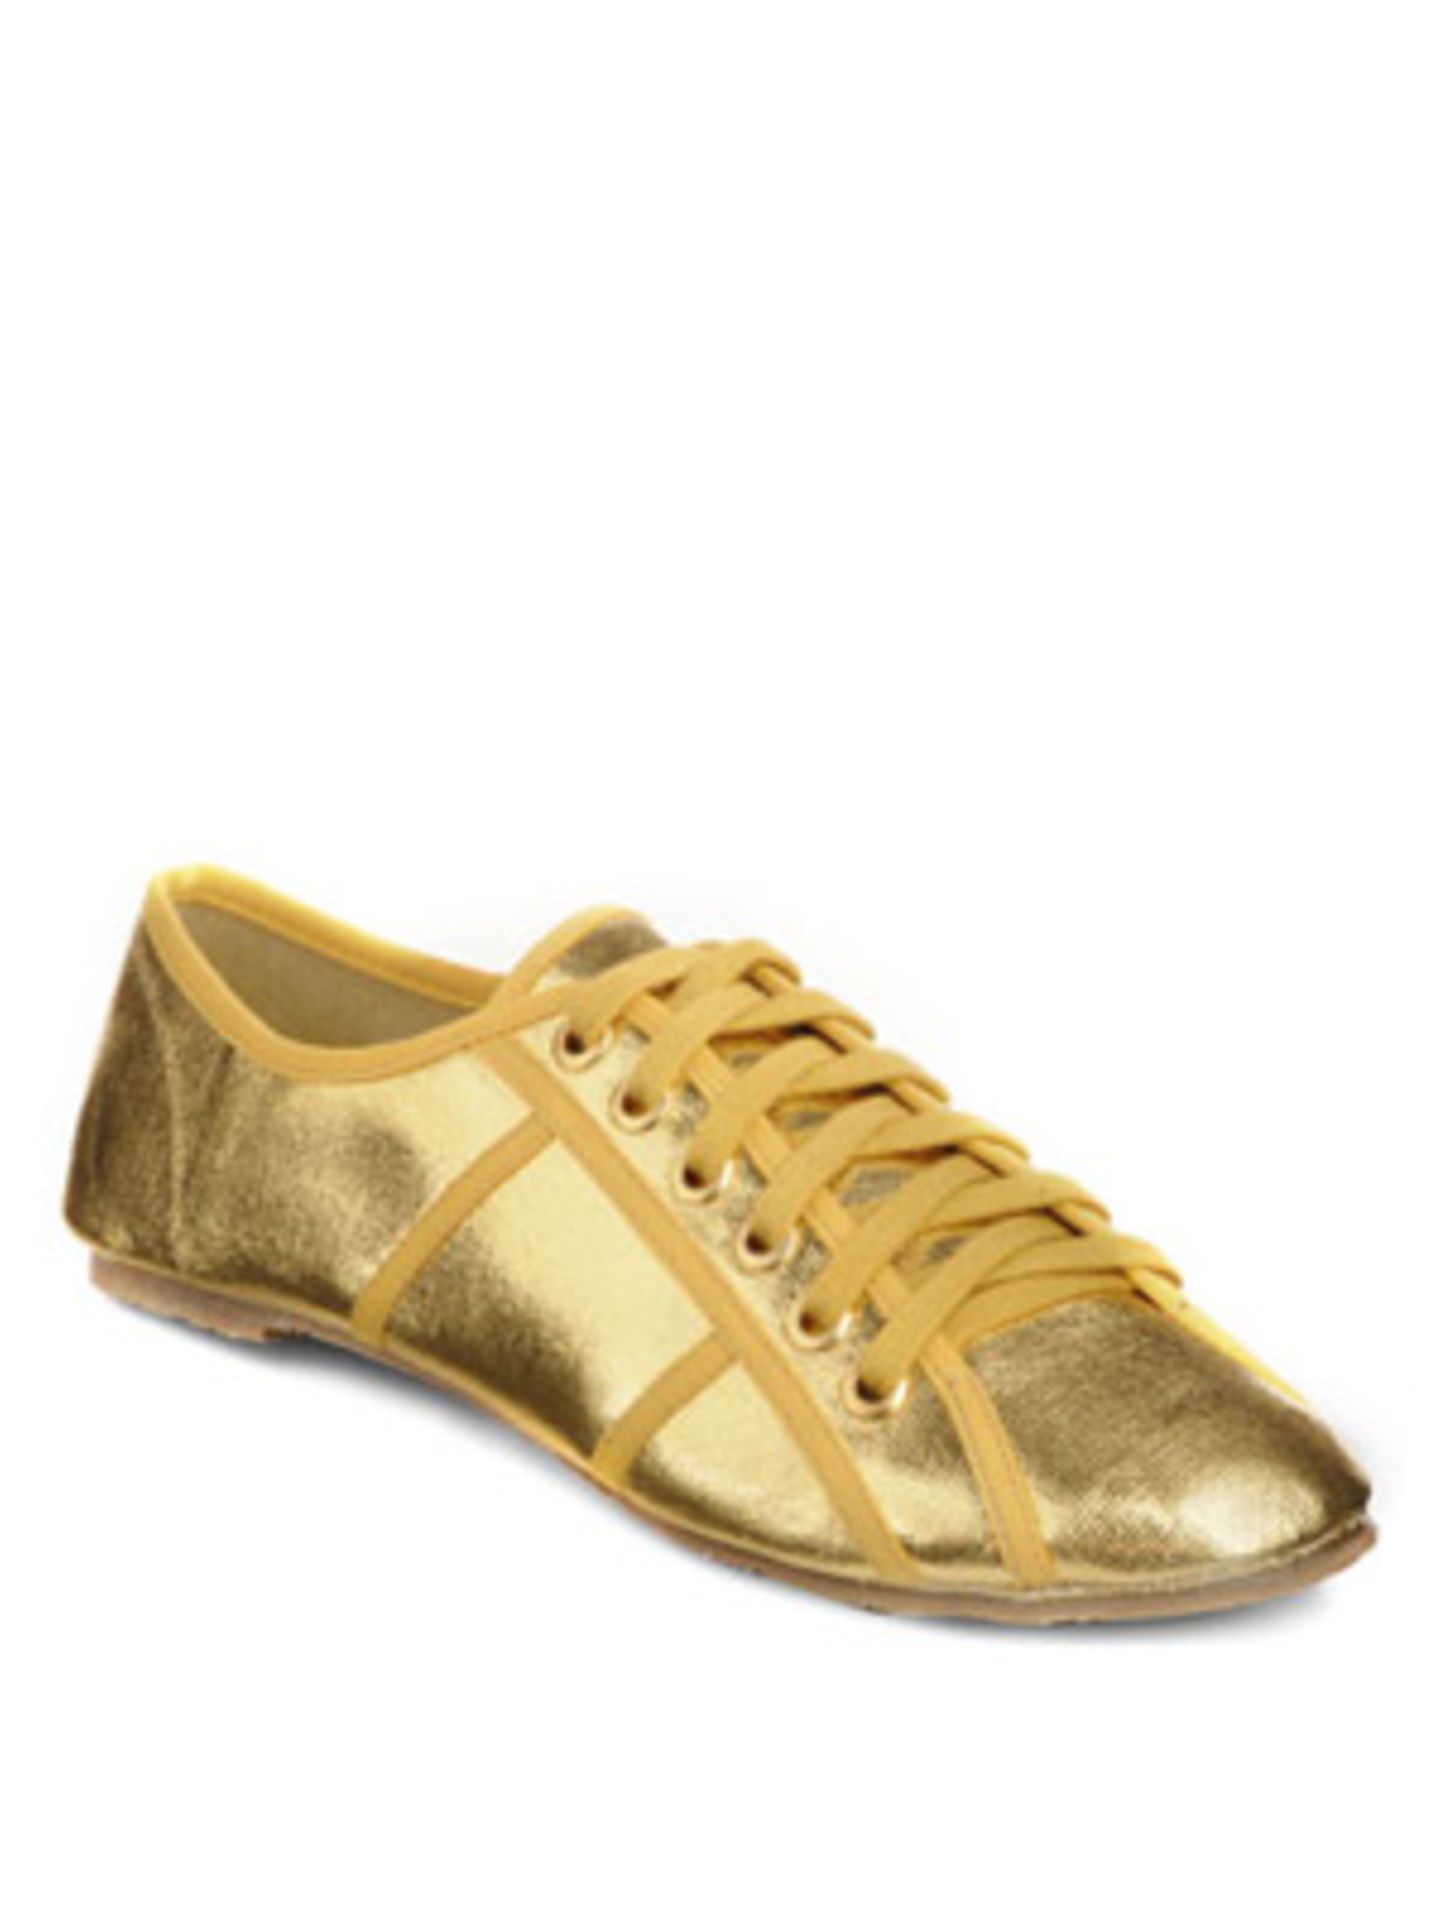 Goldene Sneakers mit gelben Schnürsenkeln von Buffalo, um 40 Euro. Über  www.buffaloshop.de.